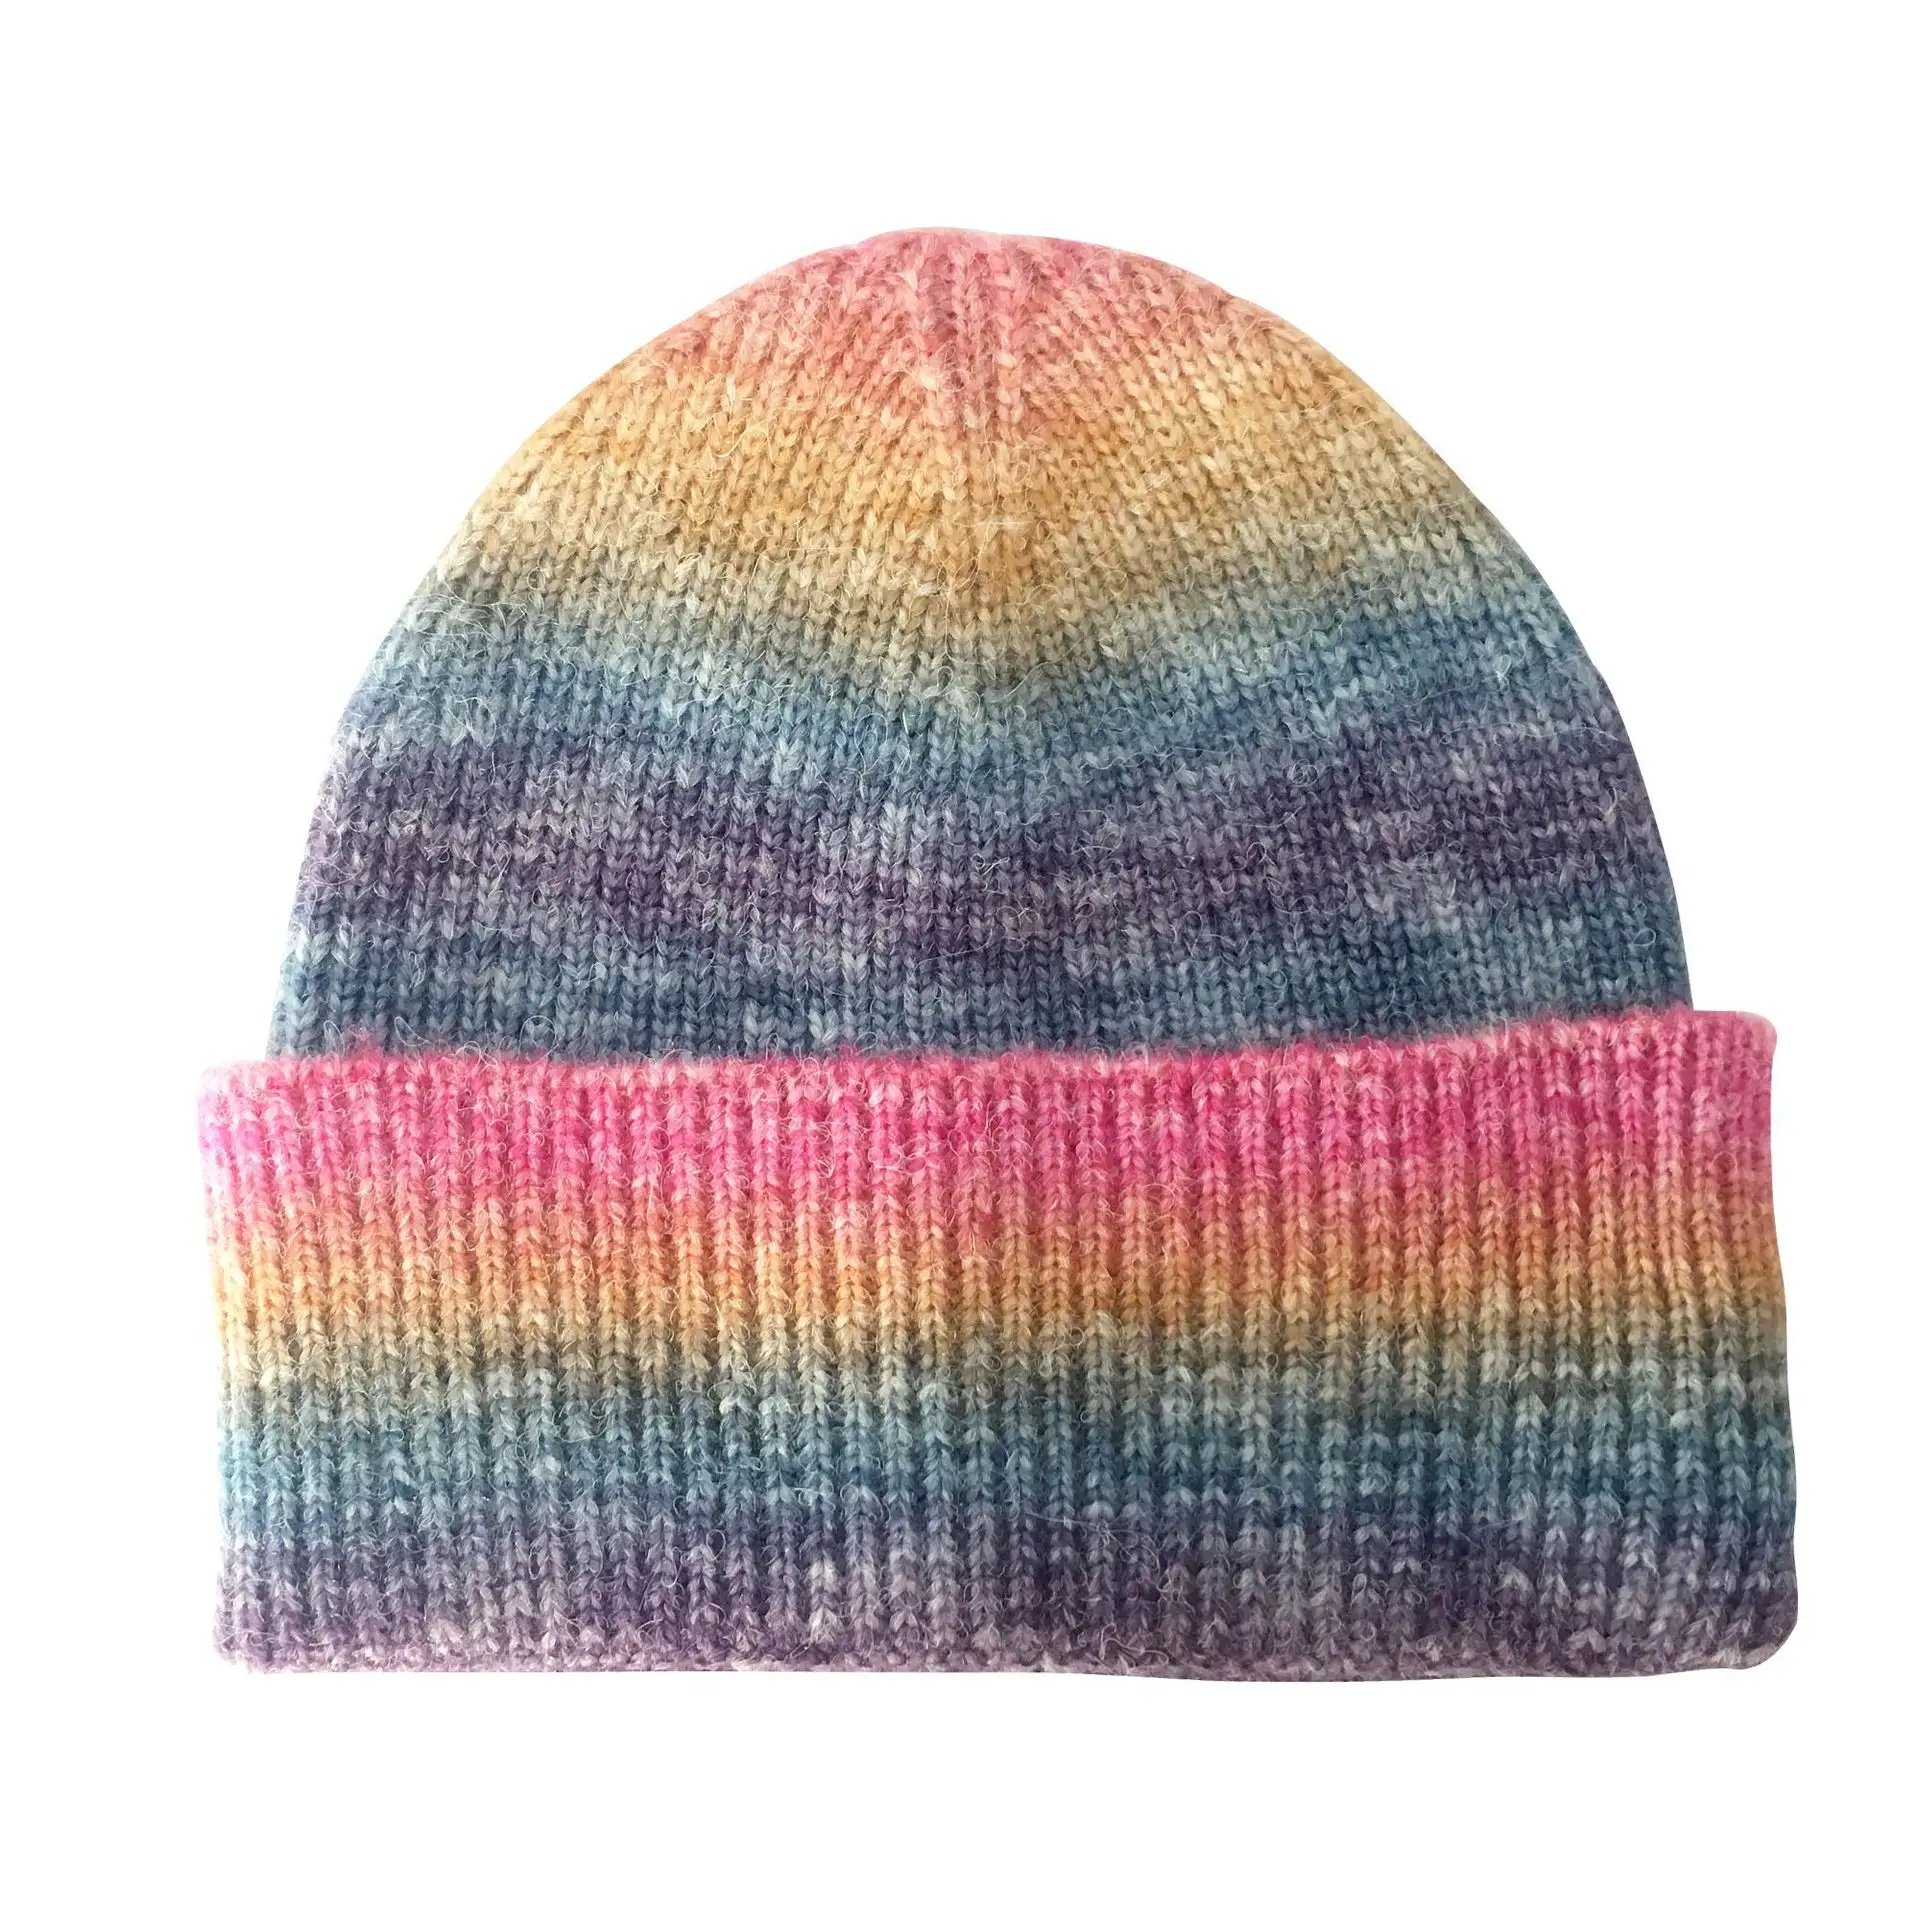 المهنية مخصص عالية الجودة الجاكار قبعة الشتاء قبعة الملونة الأزياء الصوف قبعة محبوك قبعة تدفئة